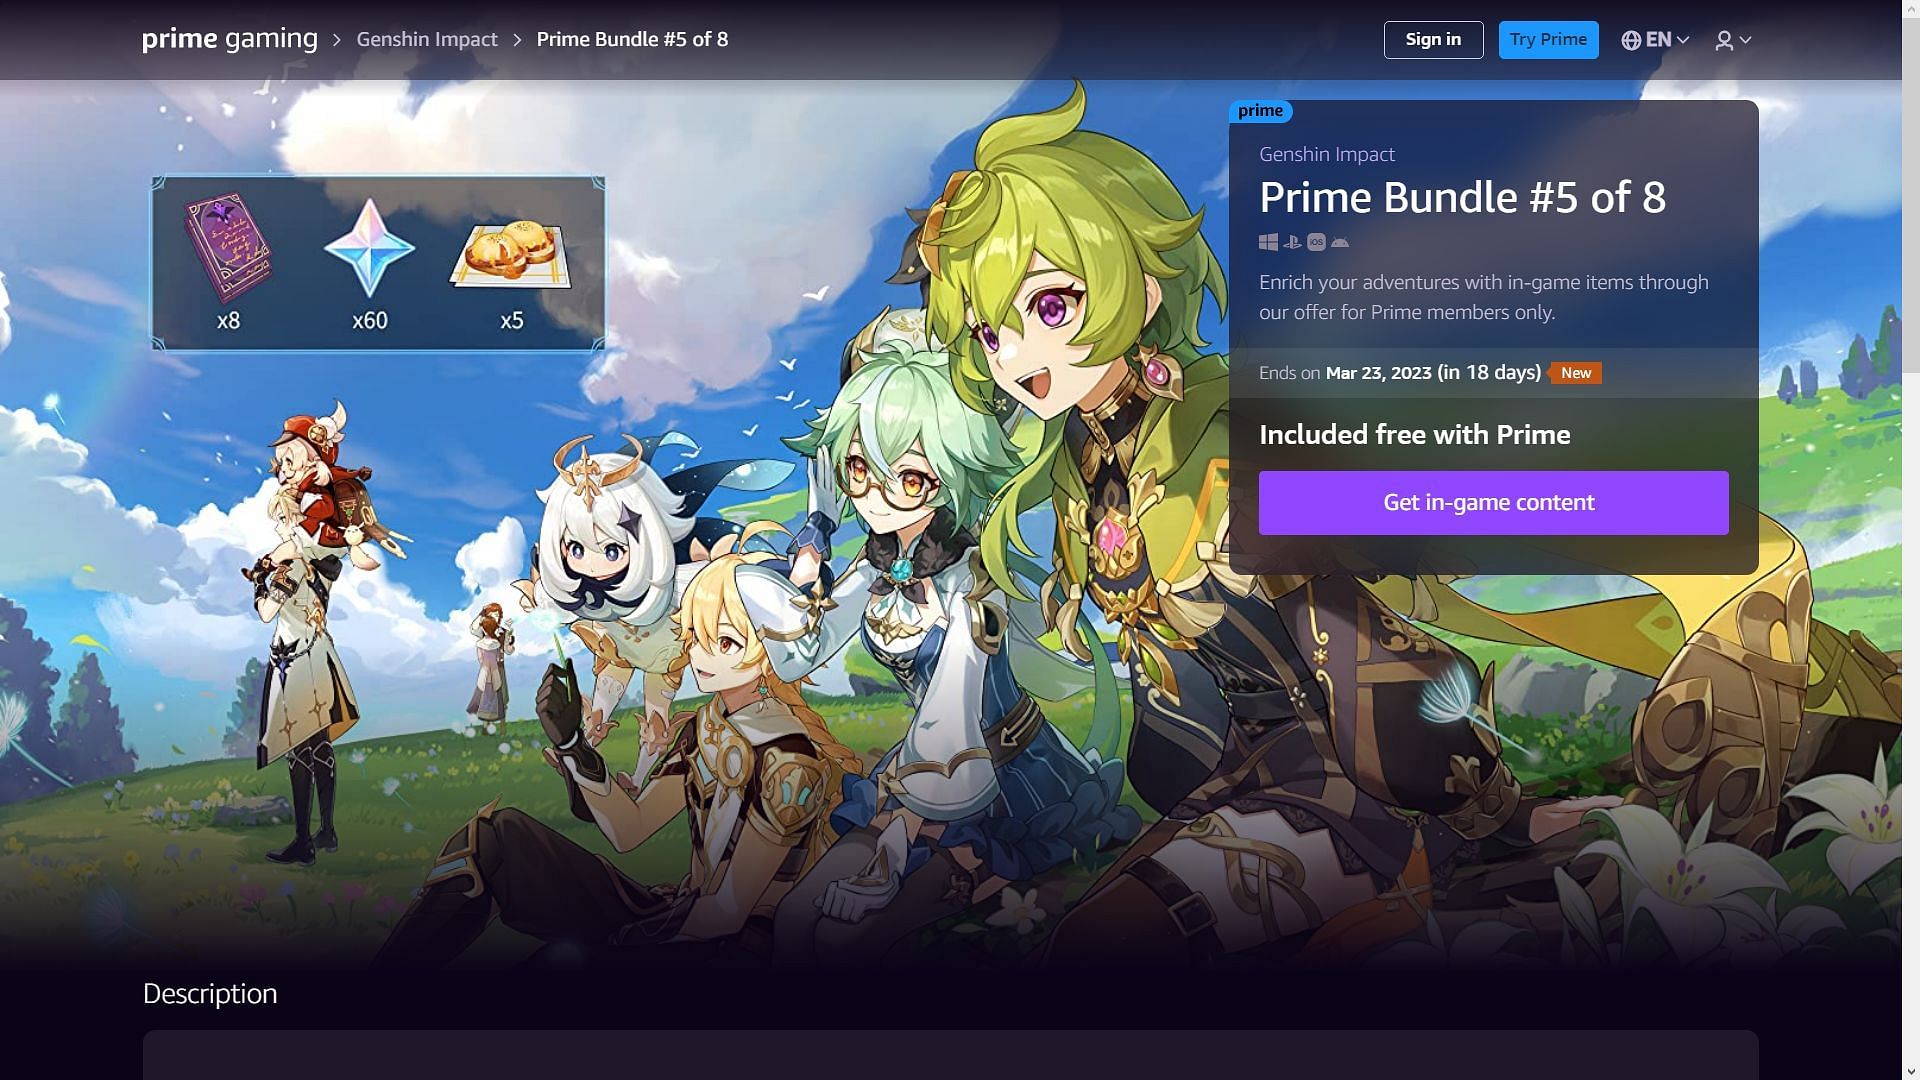 Free Primos? Genshin Impact Prime Gaming Bundle just reloaded. Get it